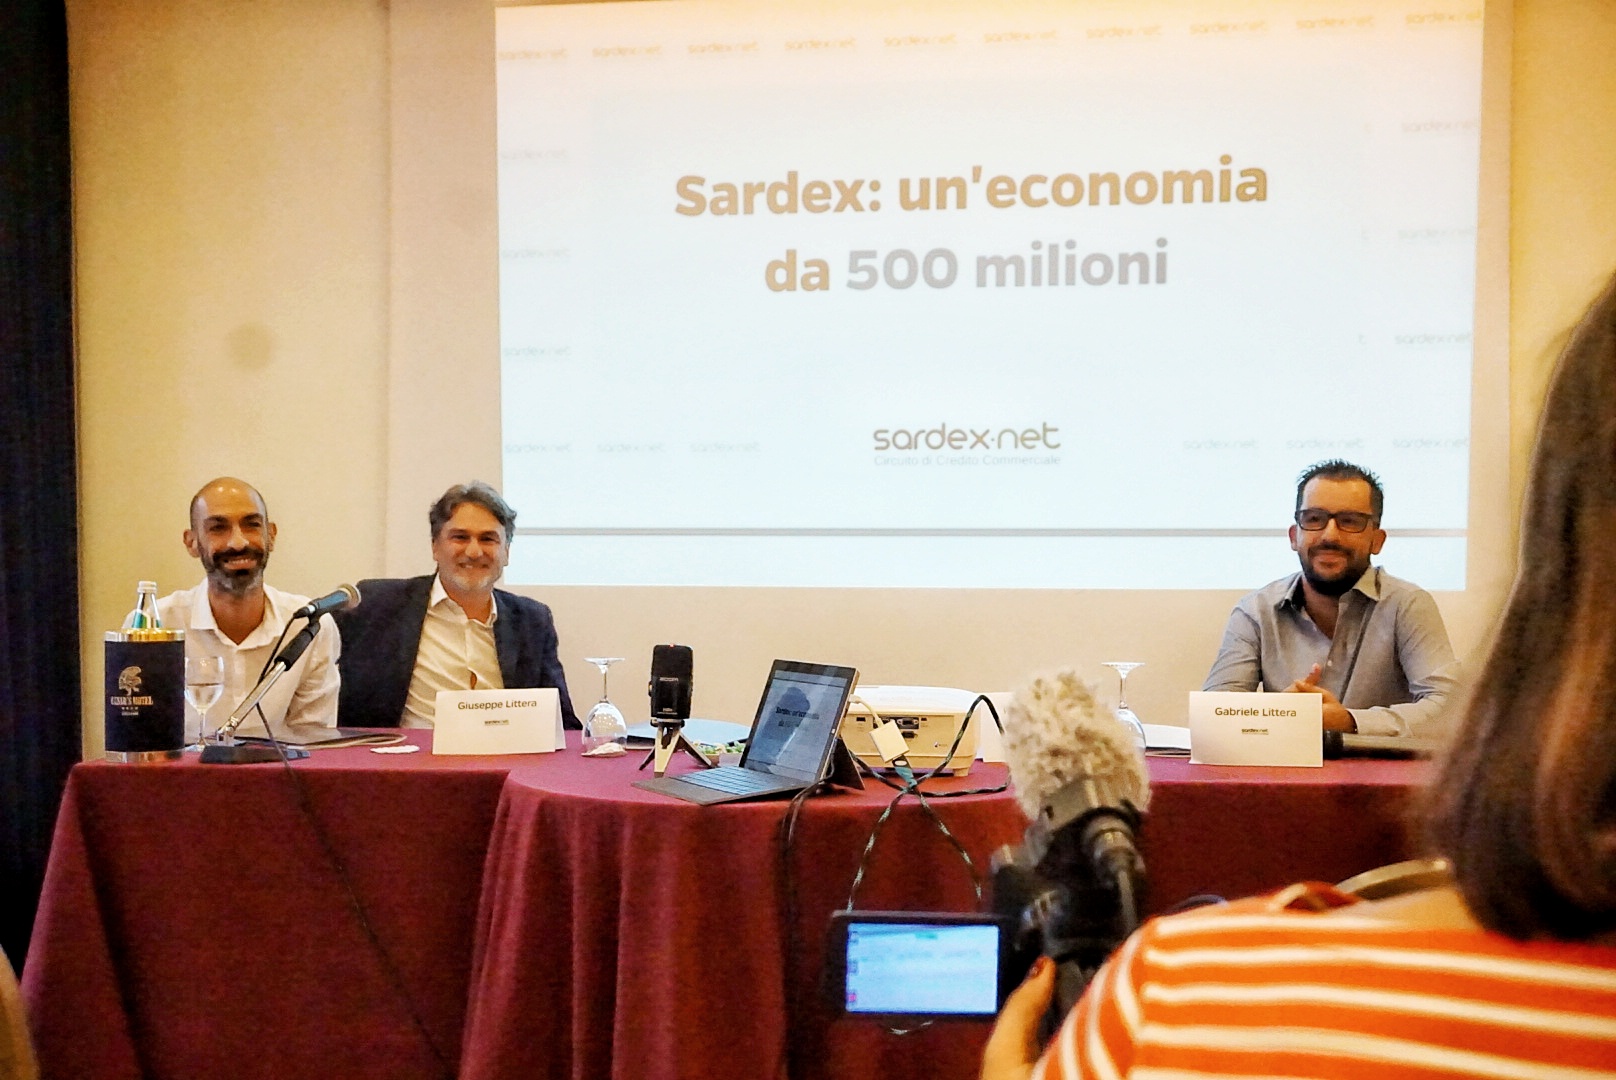 Foto conferenza (da destra a sinistra - Giuseppe Littera, Franco Contu, Gabriele Littera)